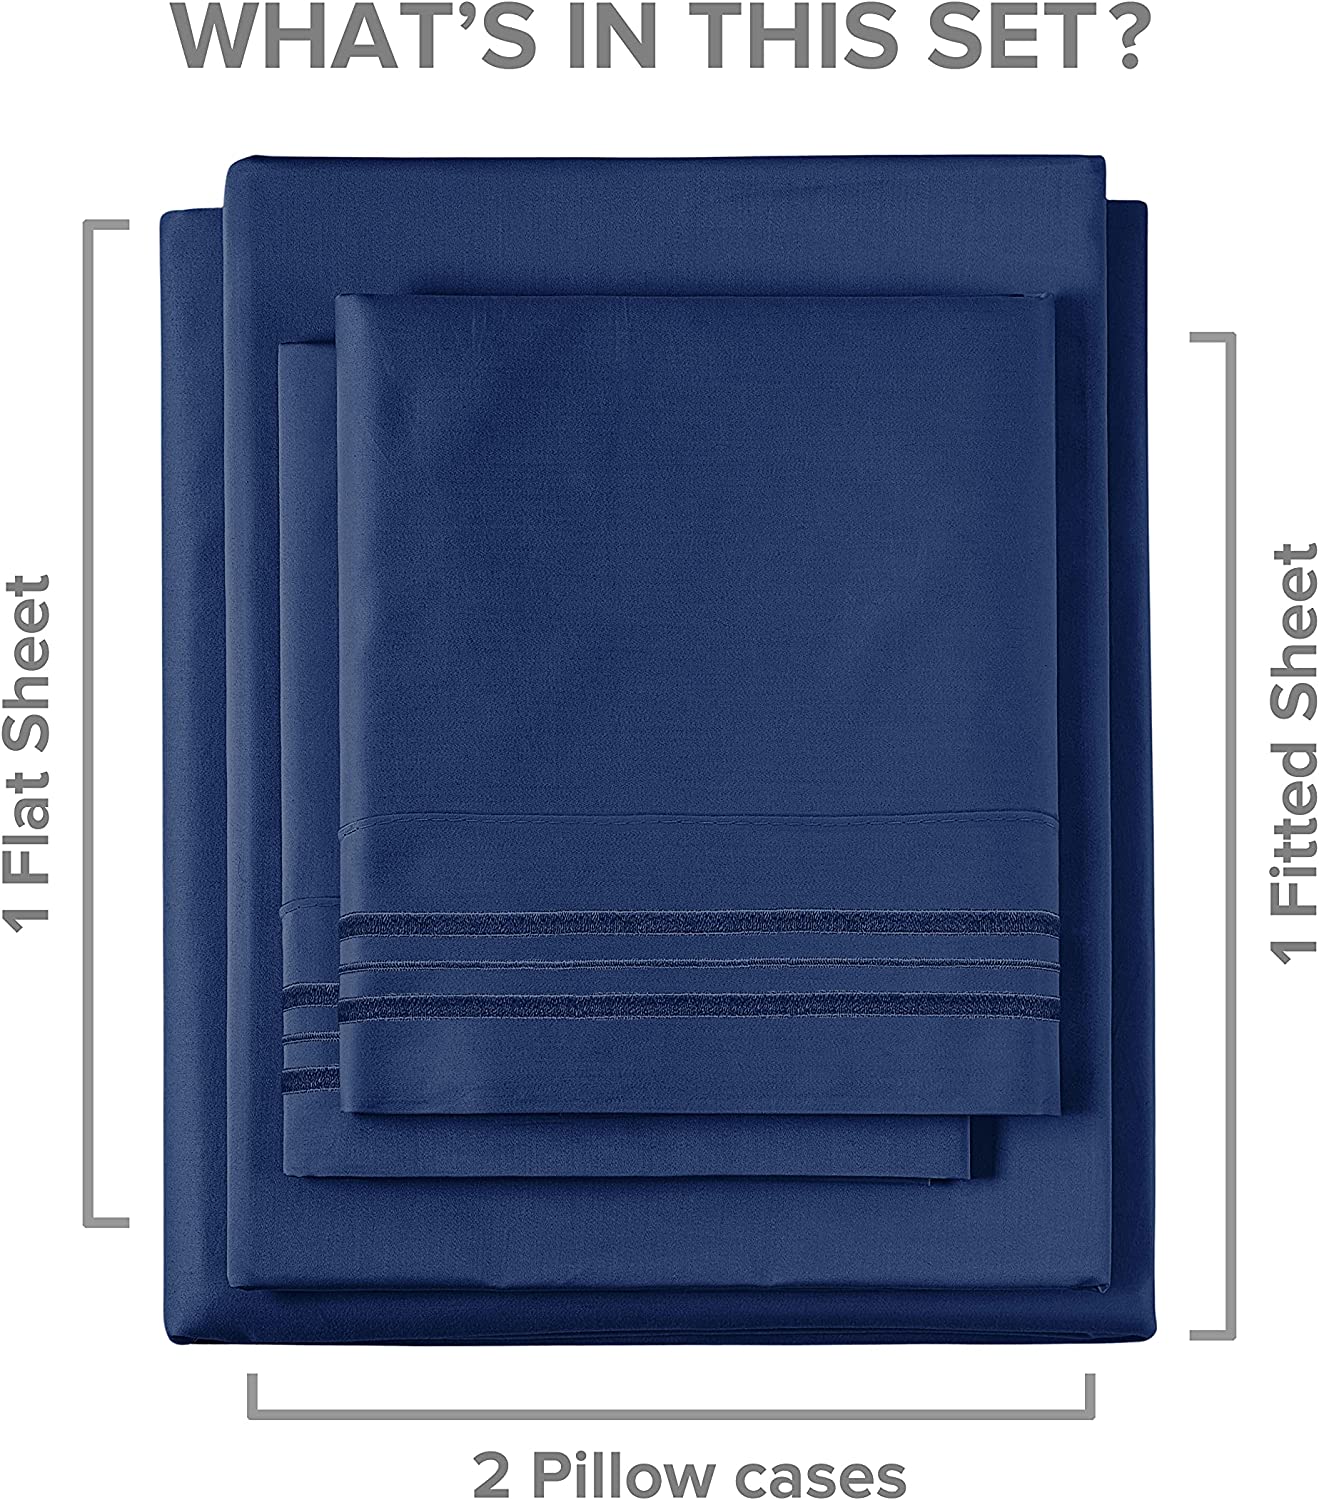 Cotton 400 Thread Count 4 Piece Deep Pocket Sheet Set - Navy Blue